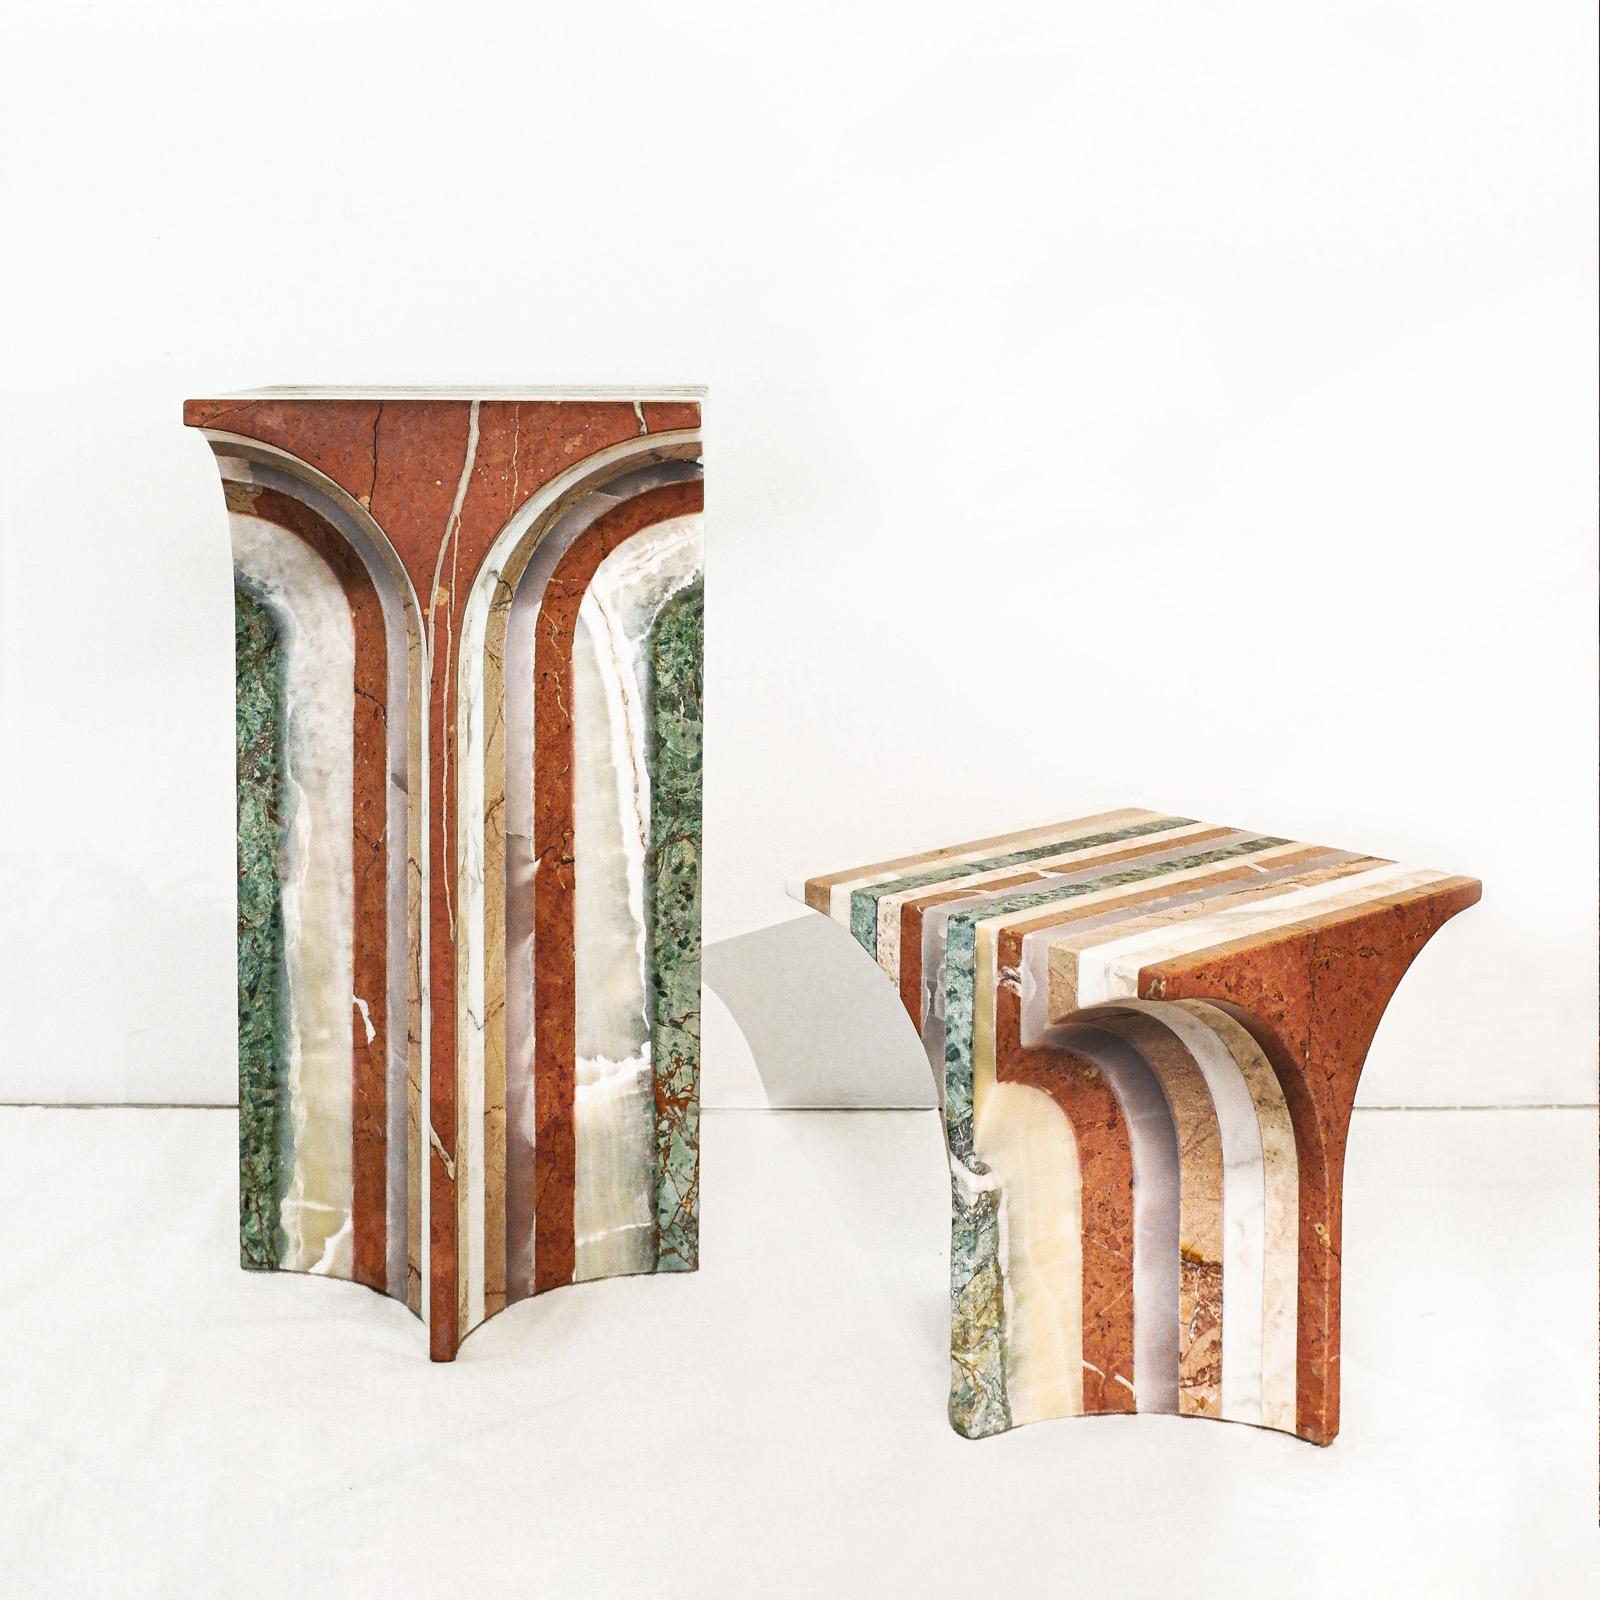 La collection exclusive de marbre SEVEN est le résultat d'une Collaboration
entre le studio de design de meubles BUDDE, basé à Cologne, et l'entreprise
SolidNature, l'un des principaux conservateurs et fournisseurs mondiaux de produits naturels de